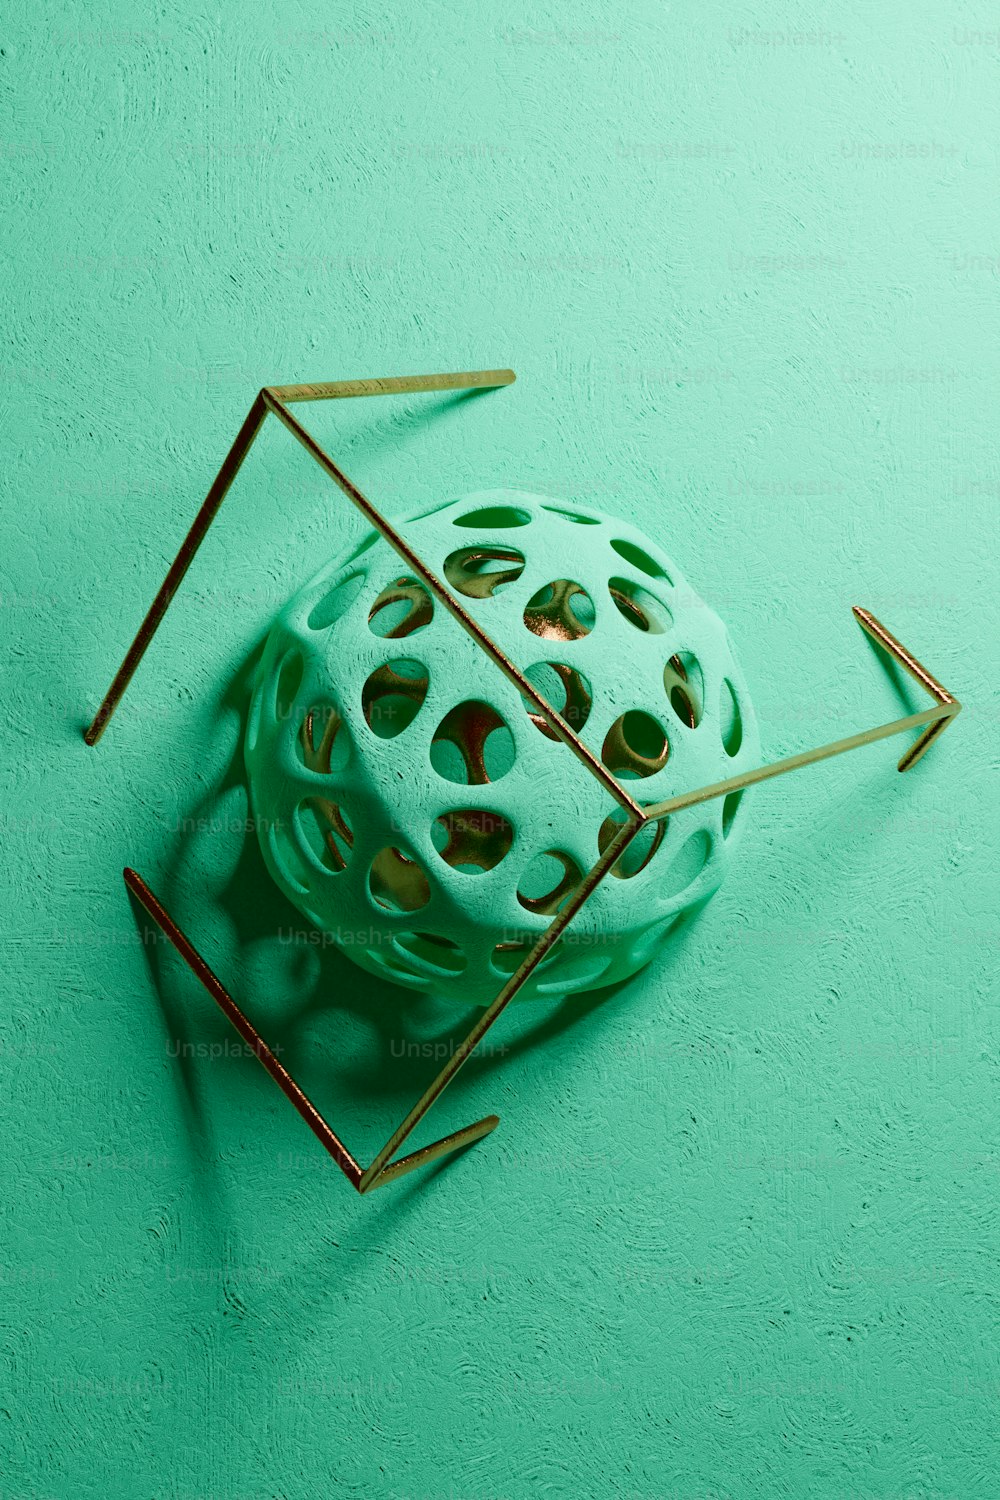 Un objeto verde con un triángulo dorado encima